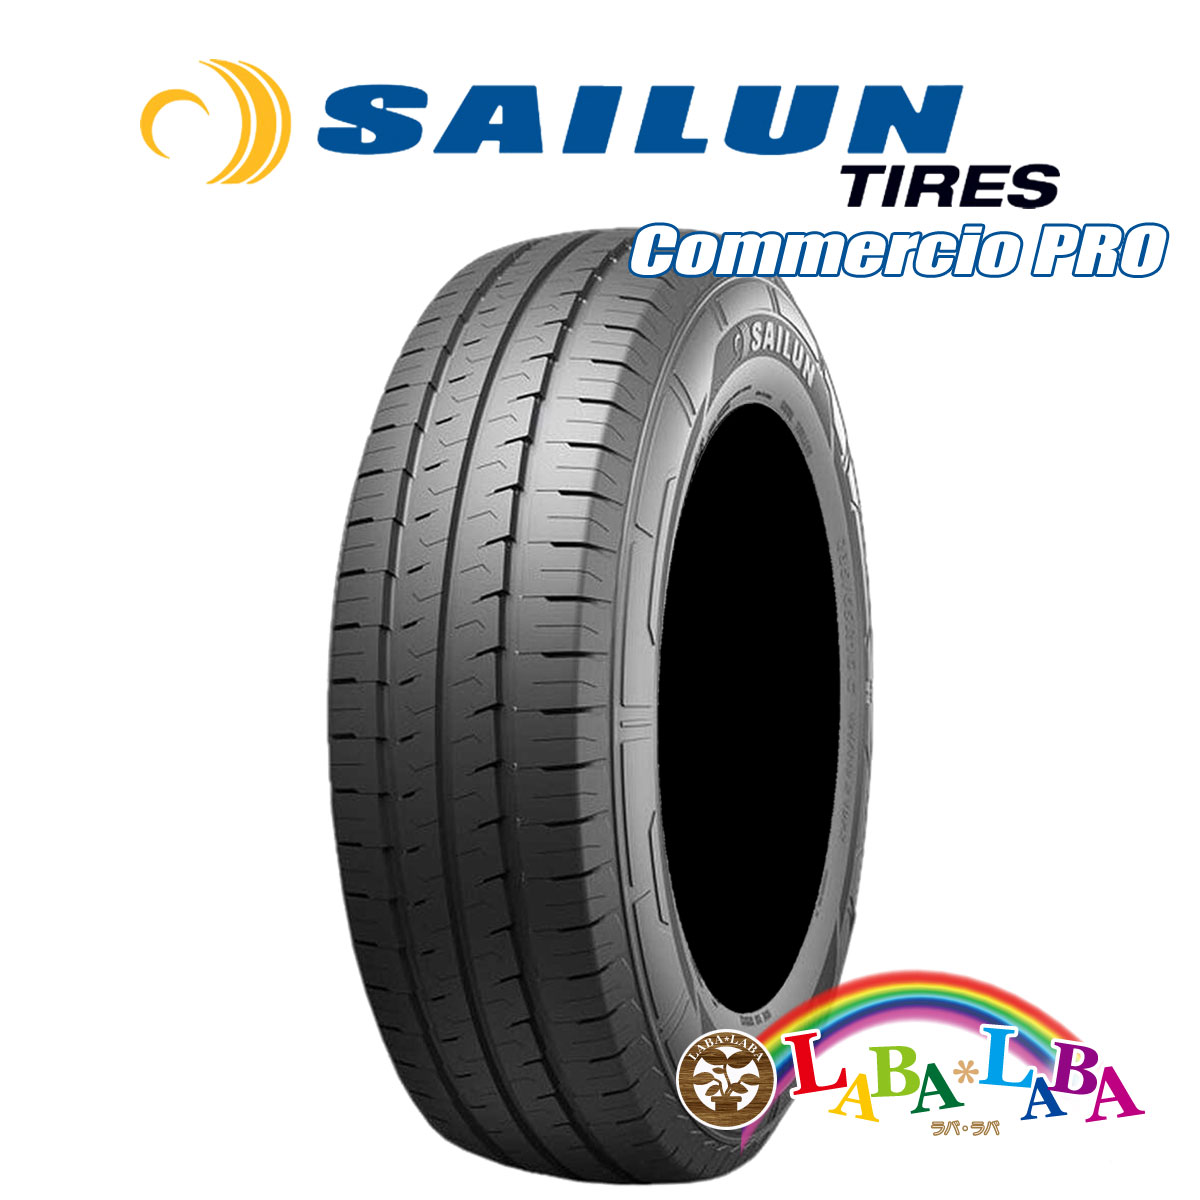 SAILUN サイレン Commercio コメルチオ PRO 205/65R16 107/105T サマータイヤ LT バン